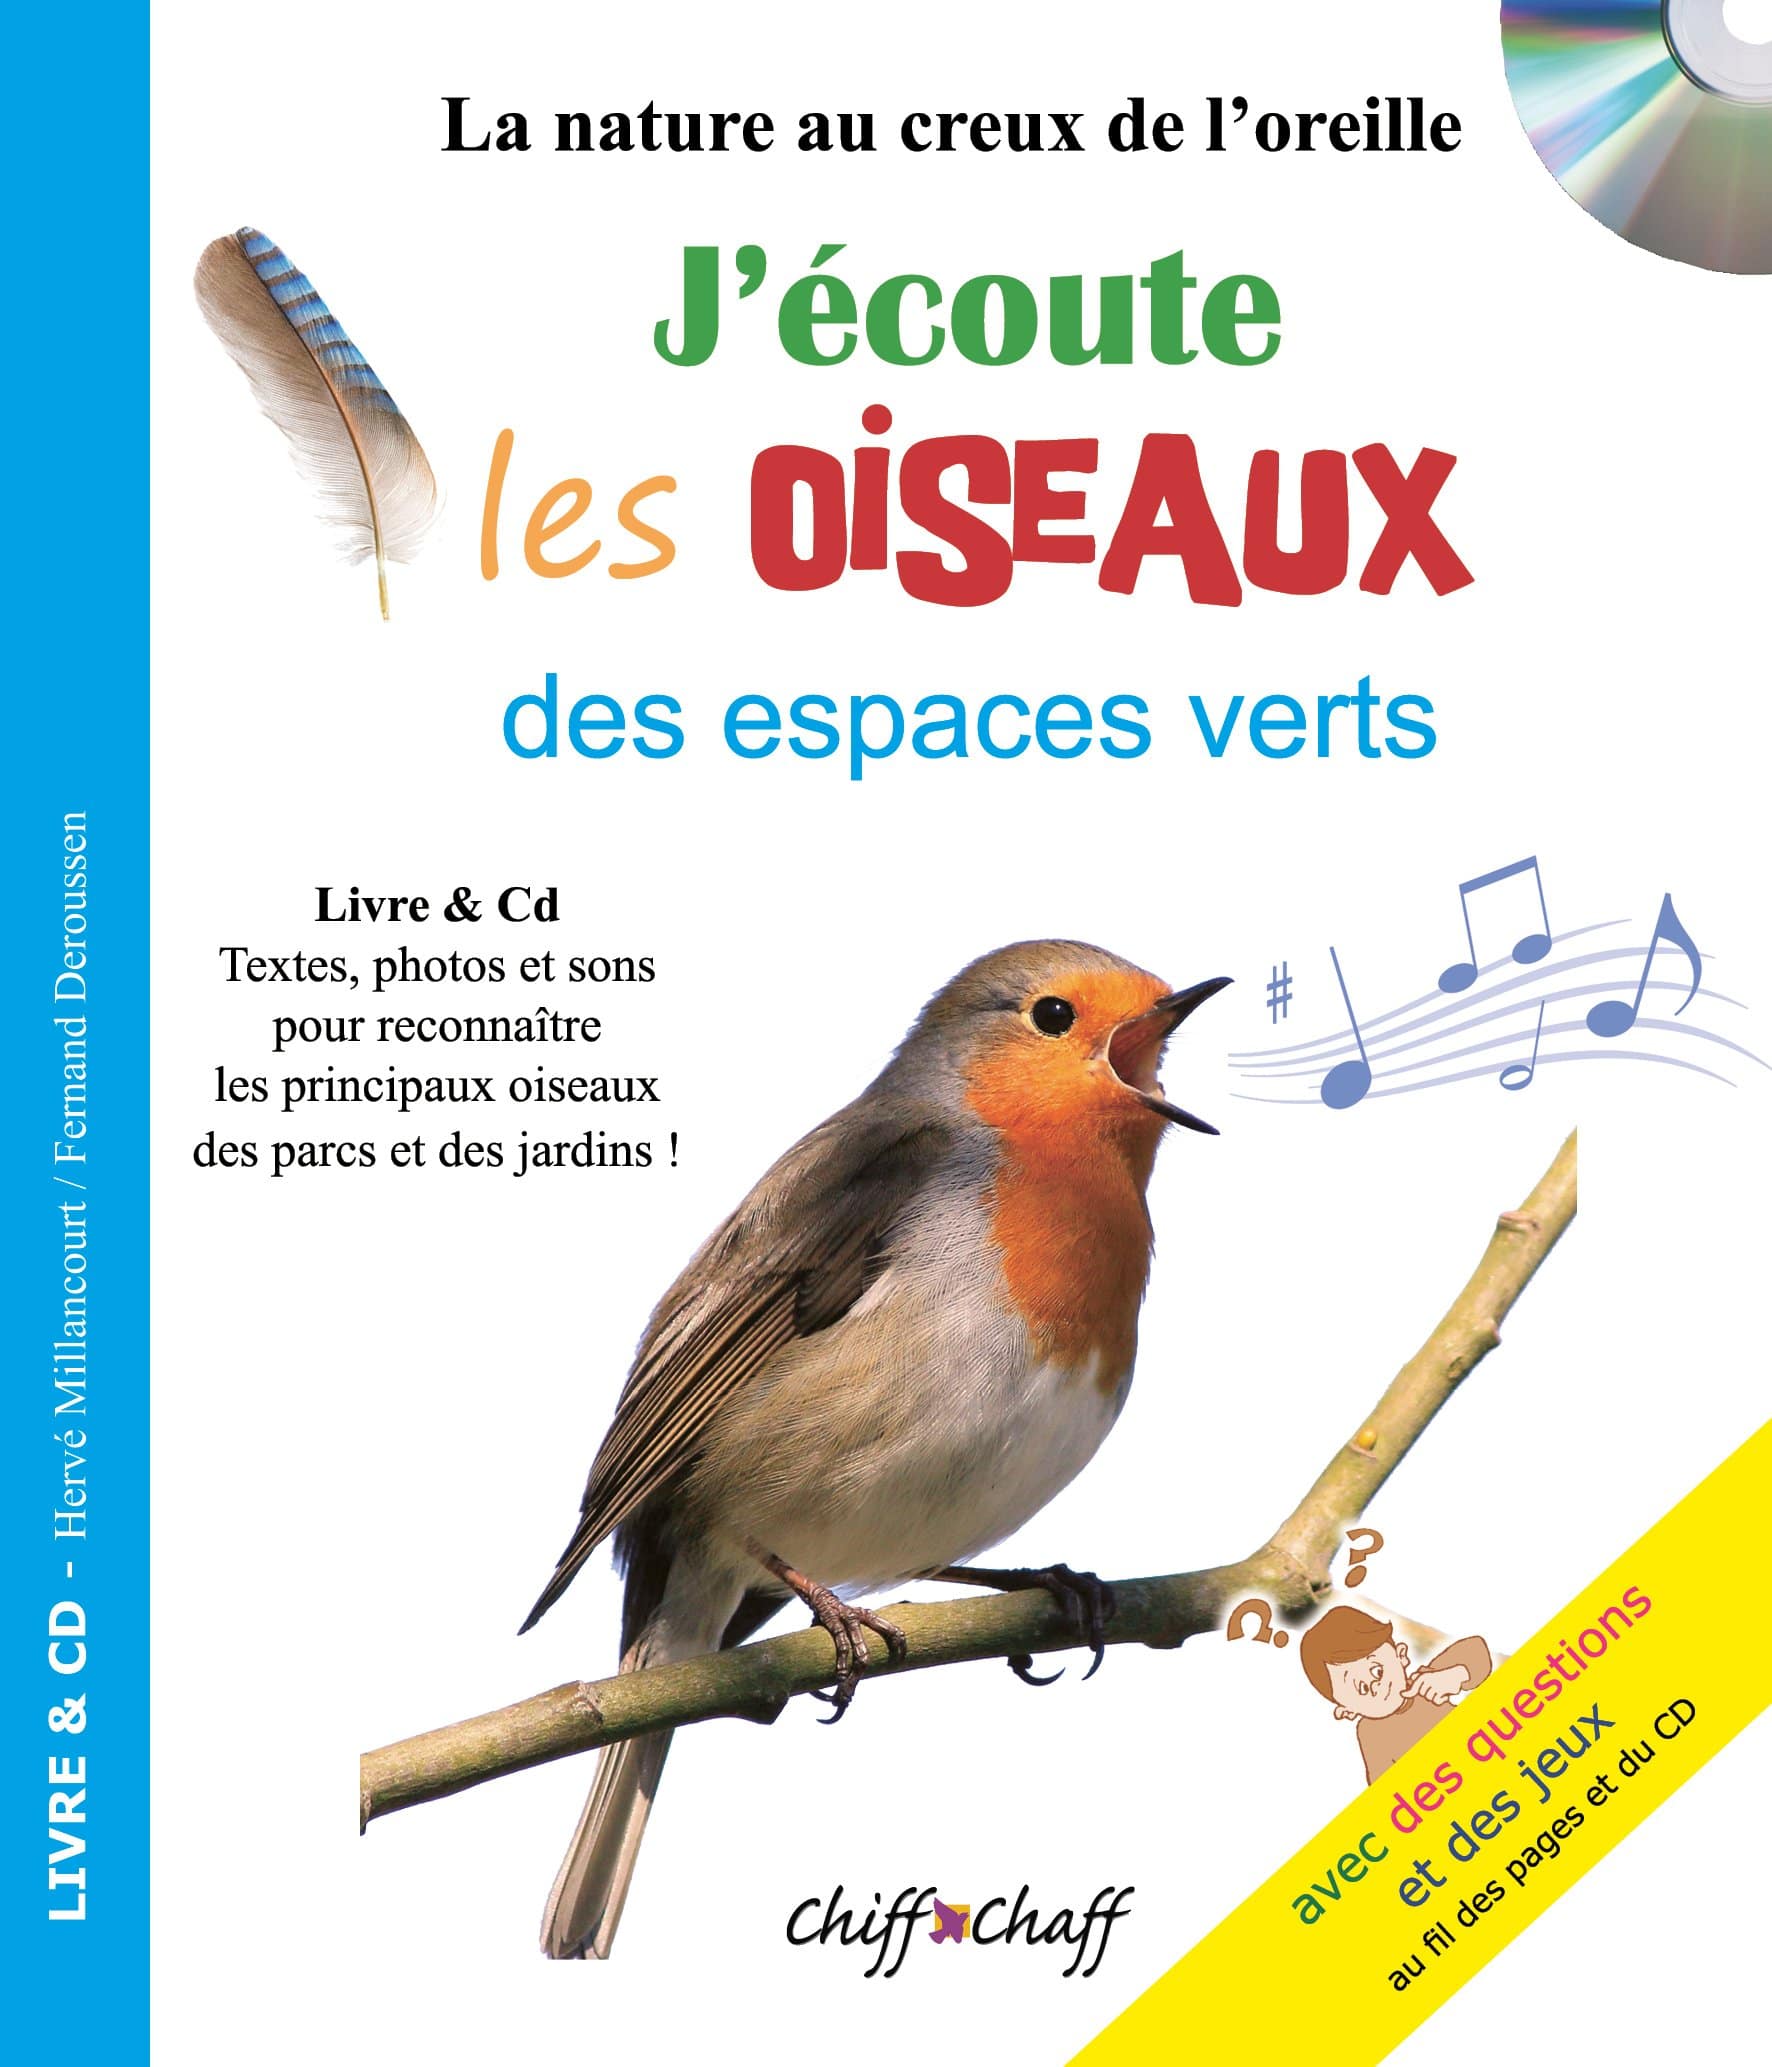 Apprendre le chant des oiseaux grâce à un CD